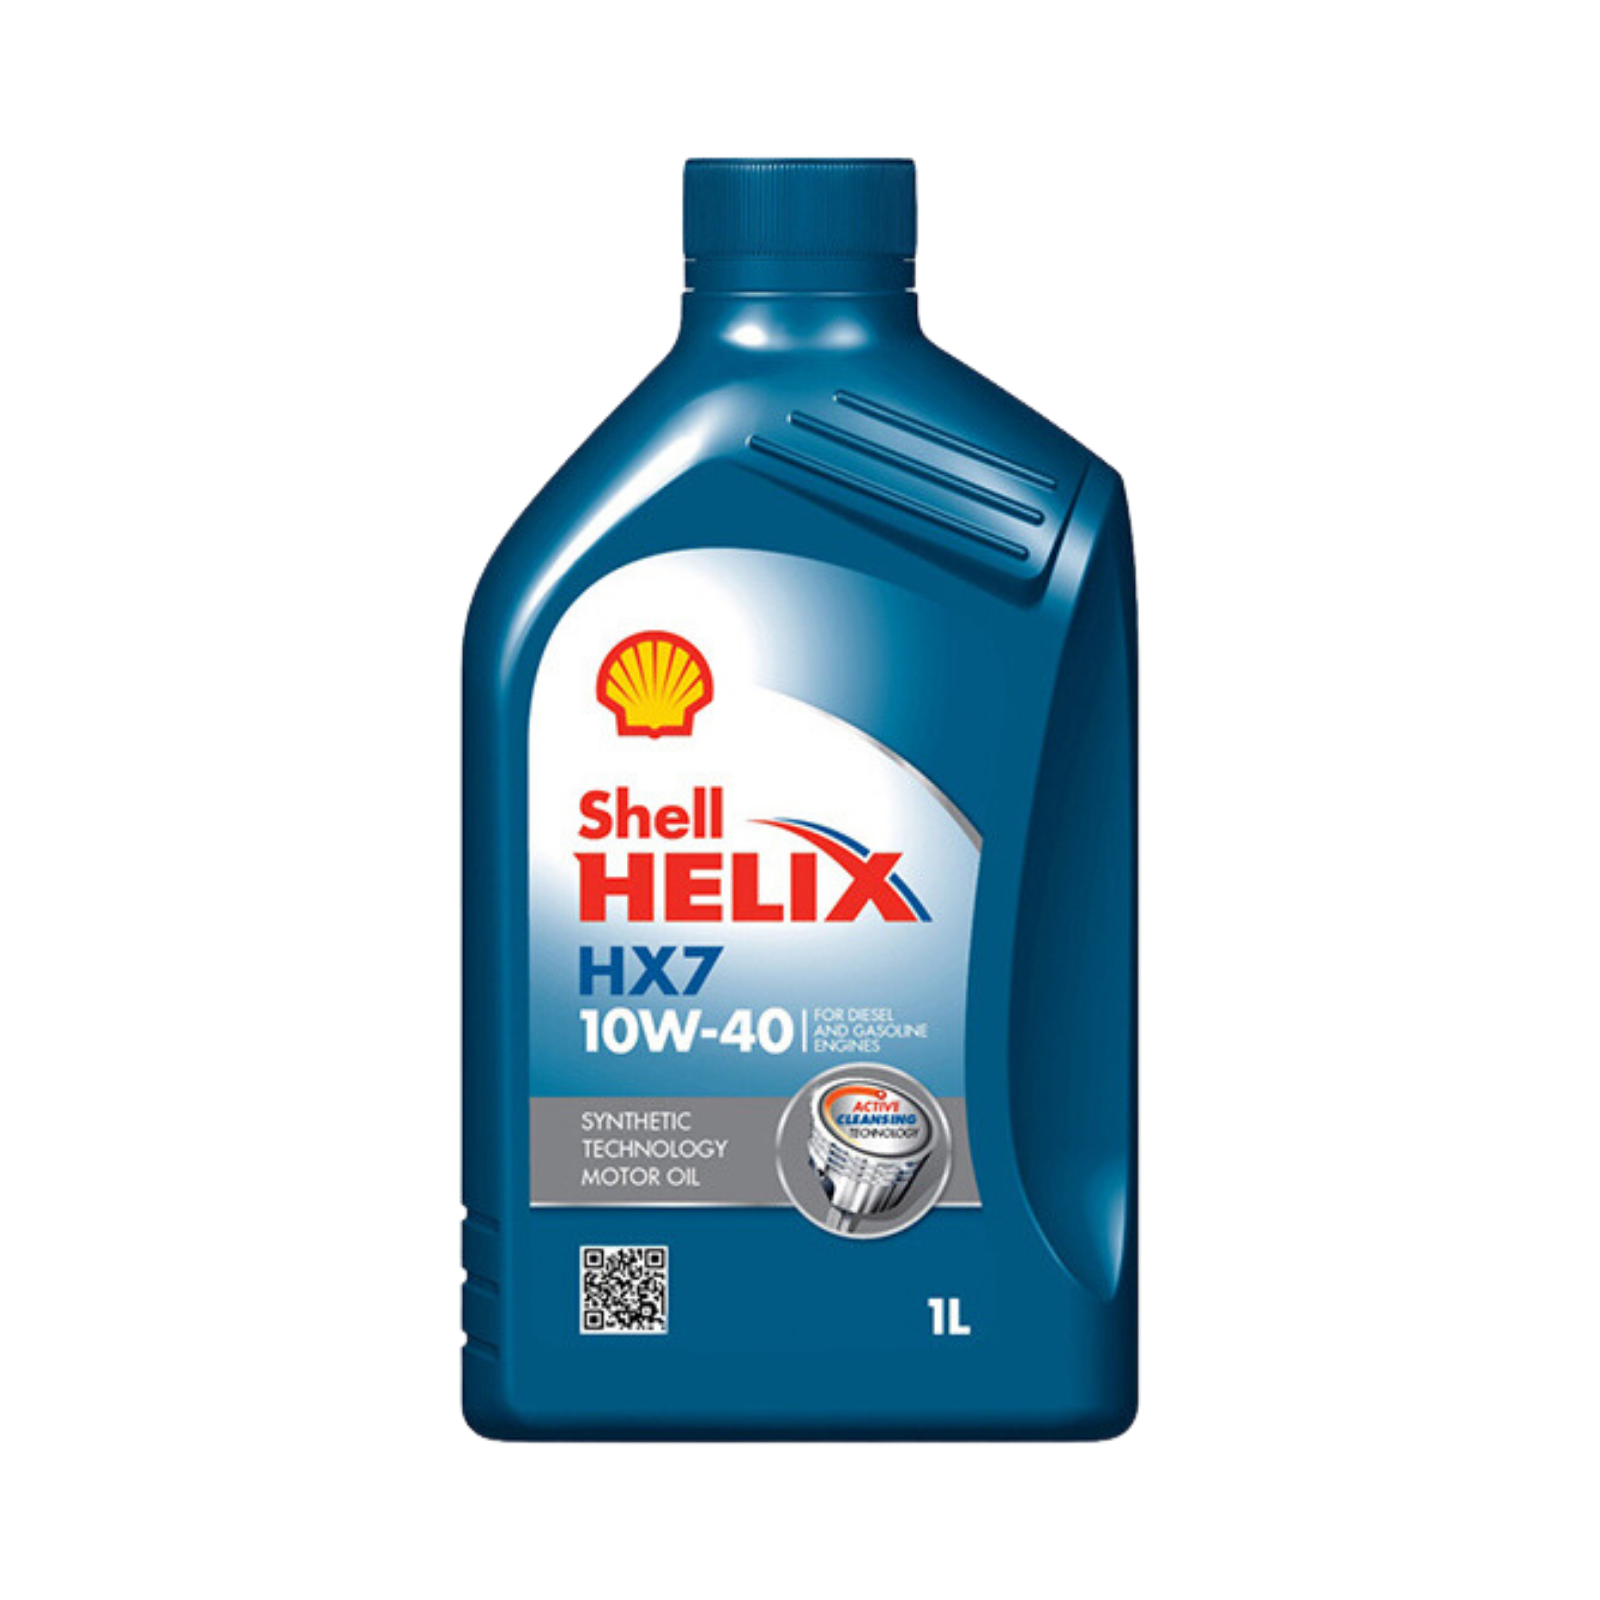 Shell Helix HX7 10W-40 1L Engine Oil